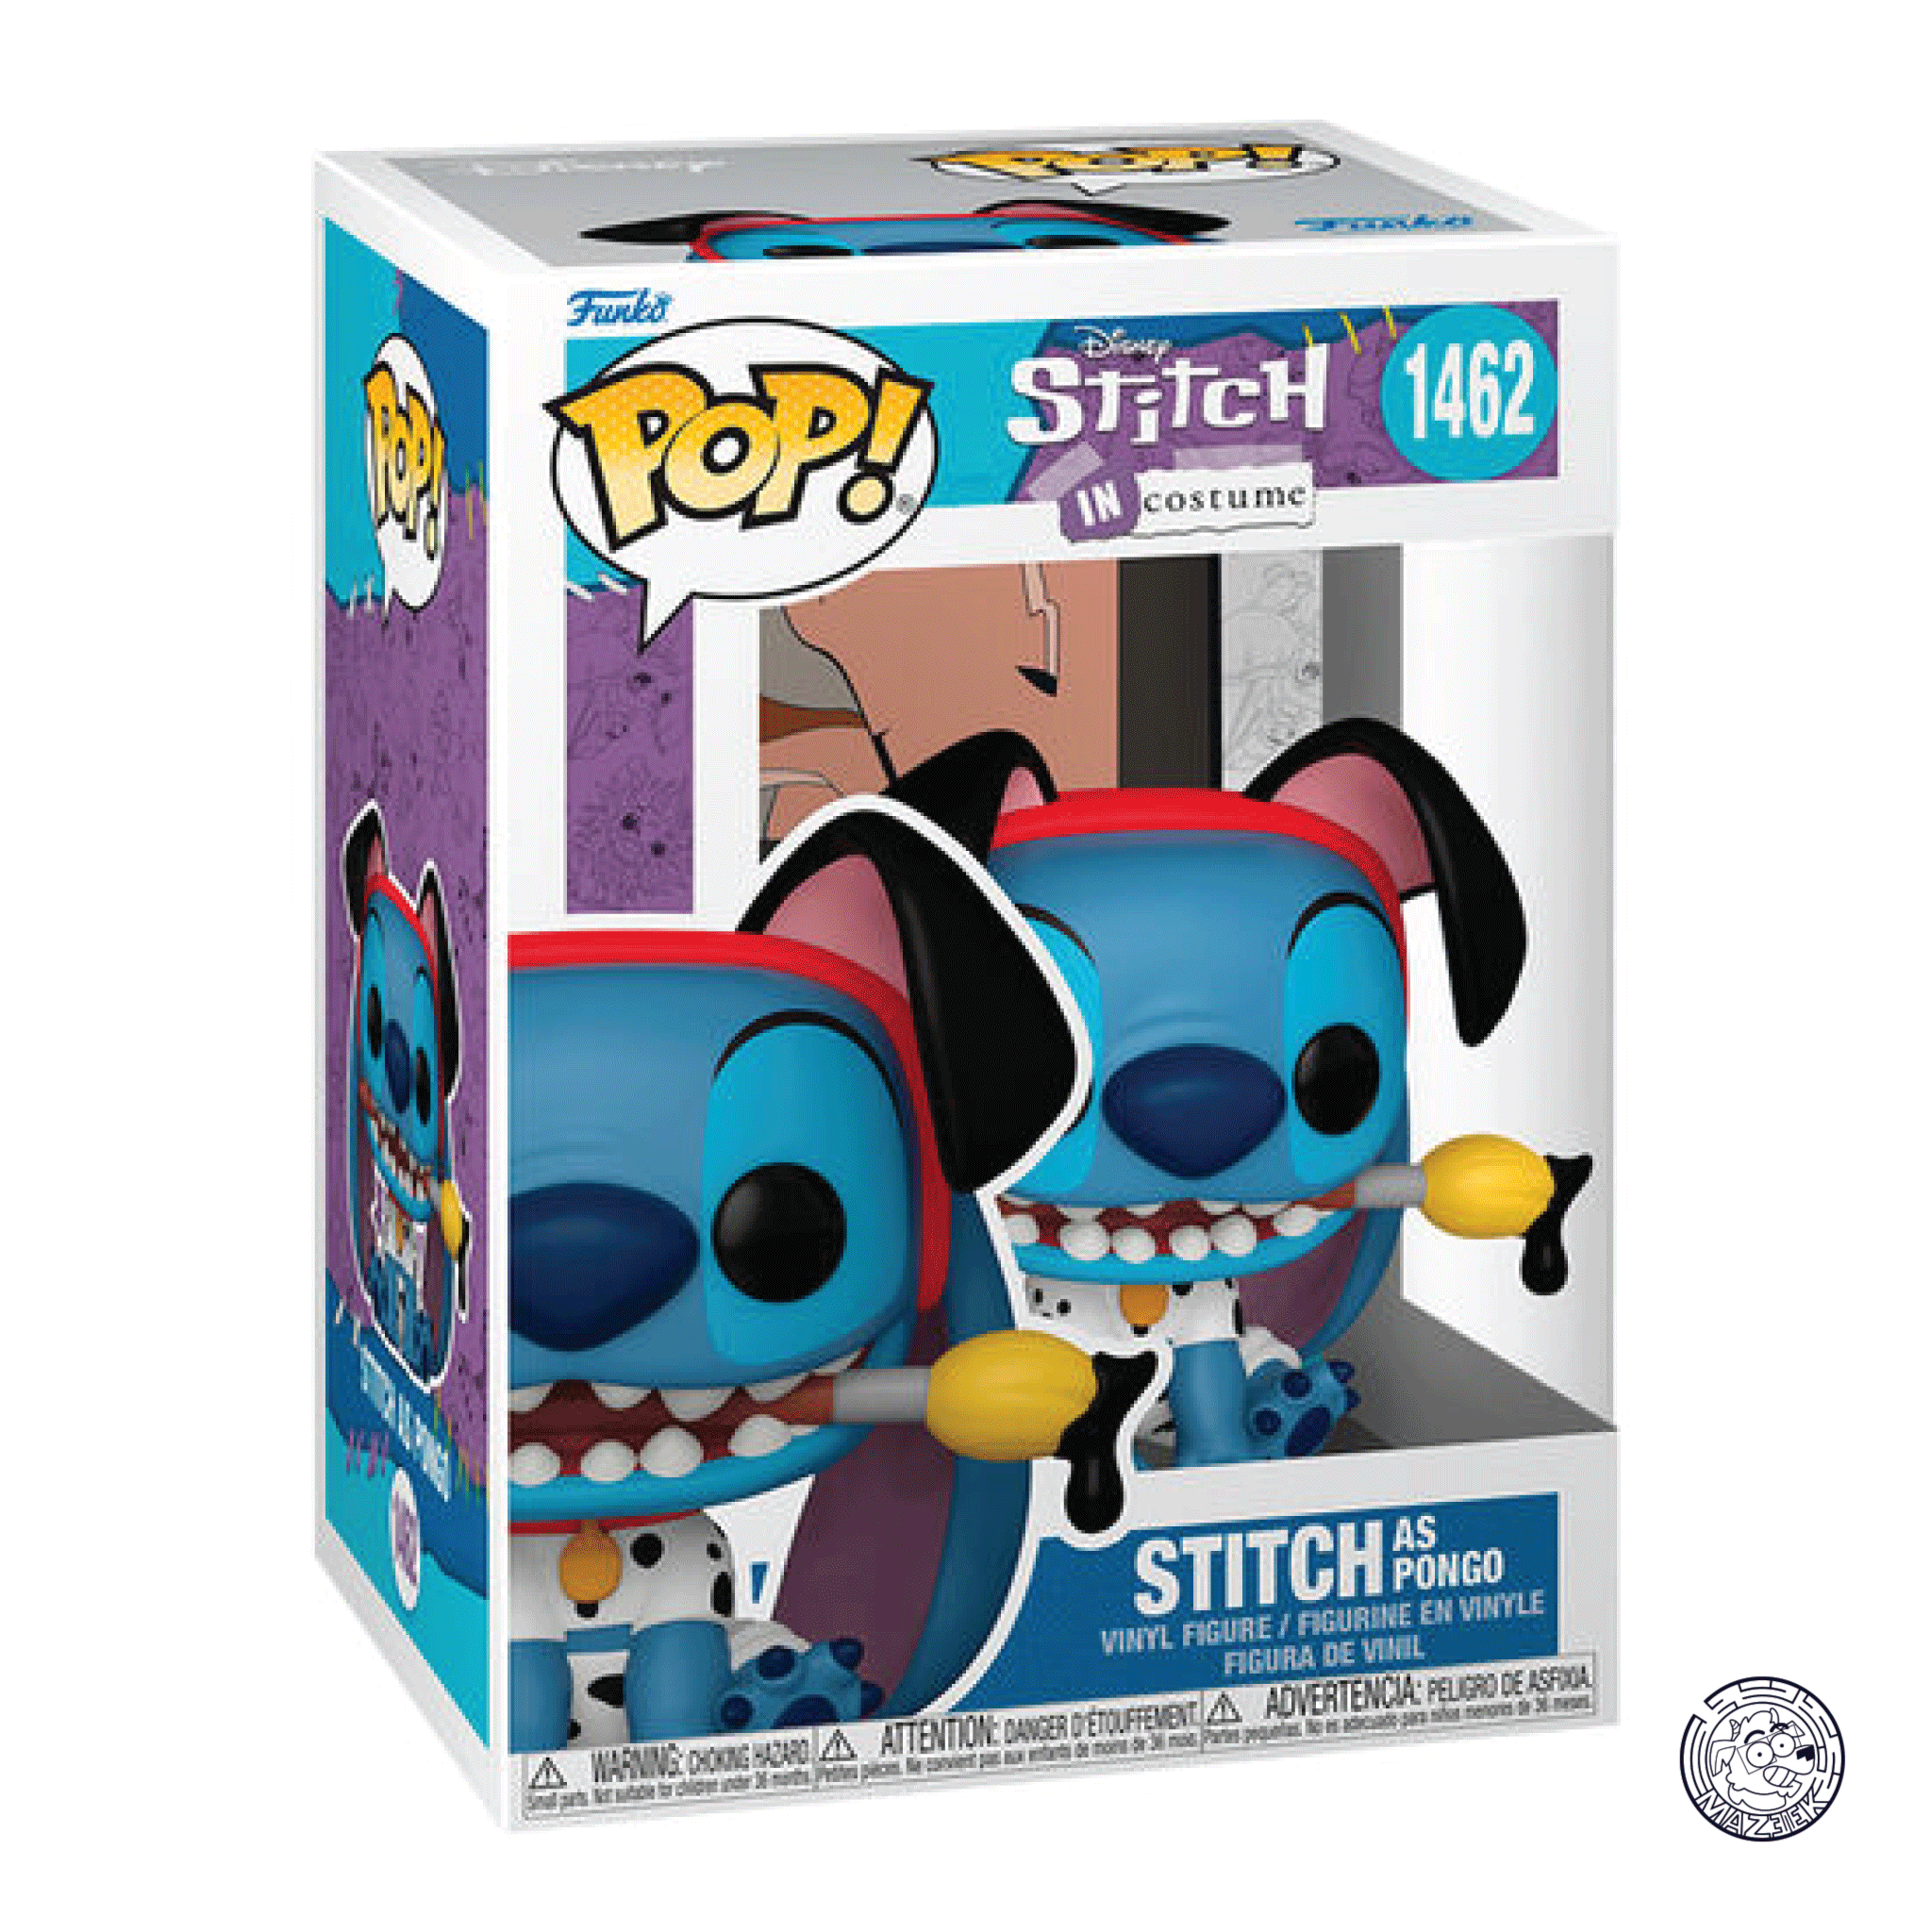 Funko POP! Stitch in Costume: Stitch as Pongo 1462